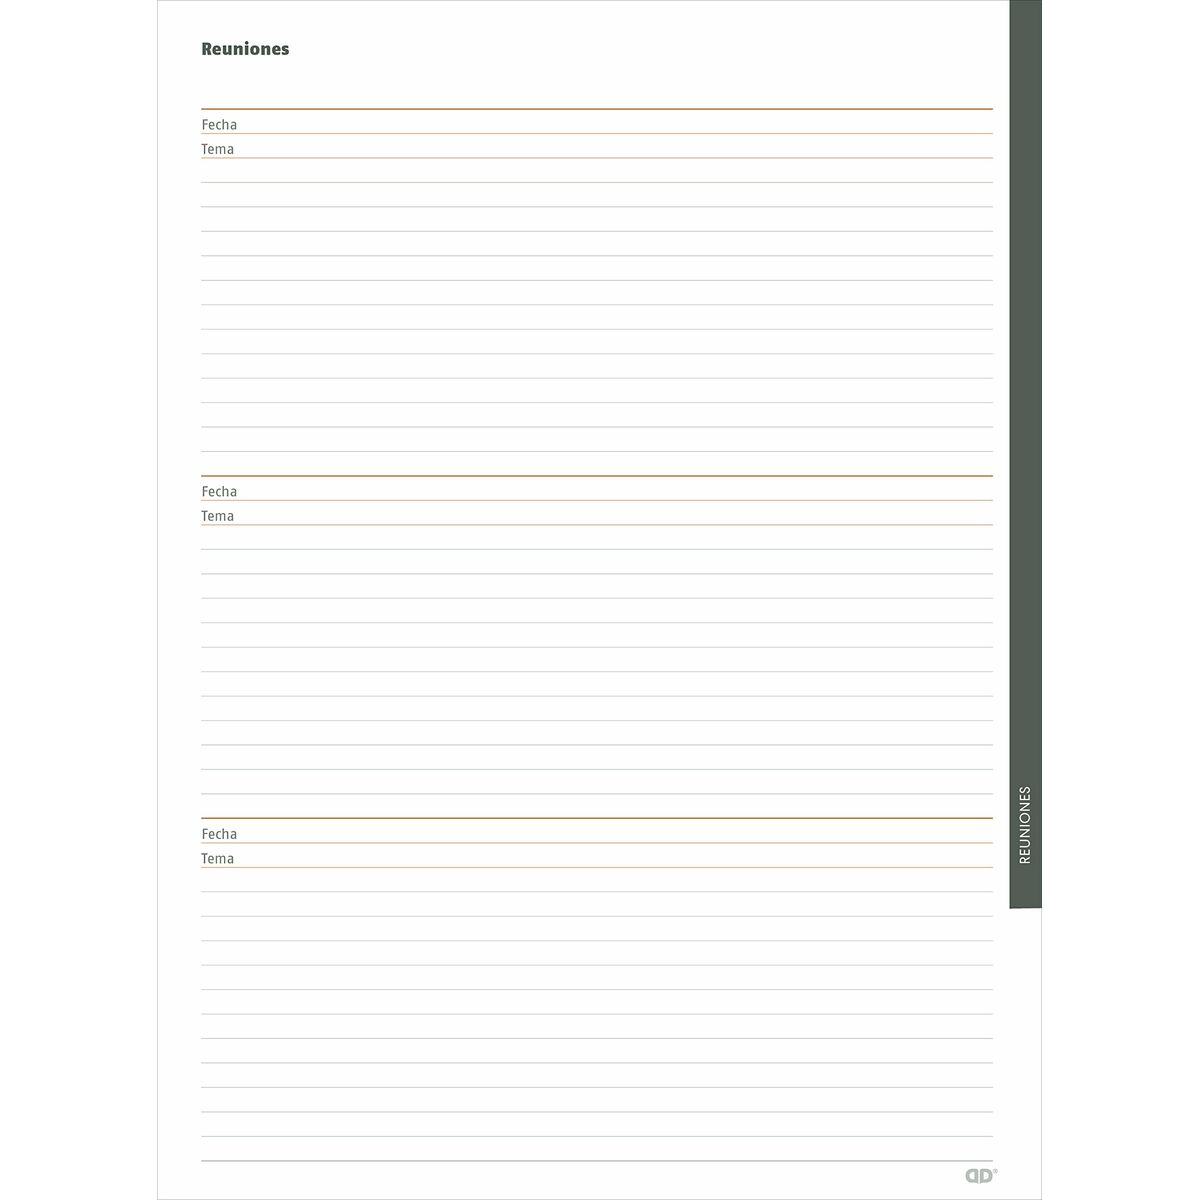 Kalendarz książkowy Additio Global Dziennik Nauczyciela 24 x 32 cm